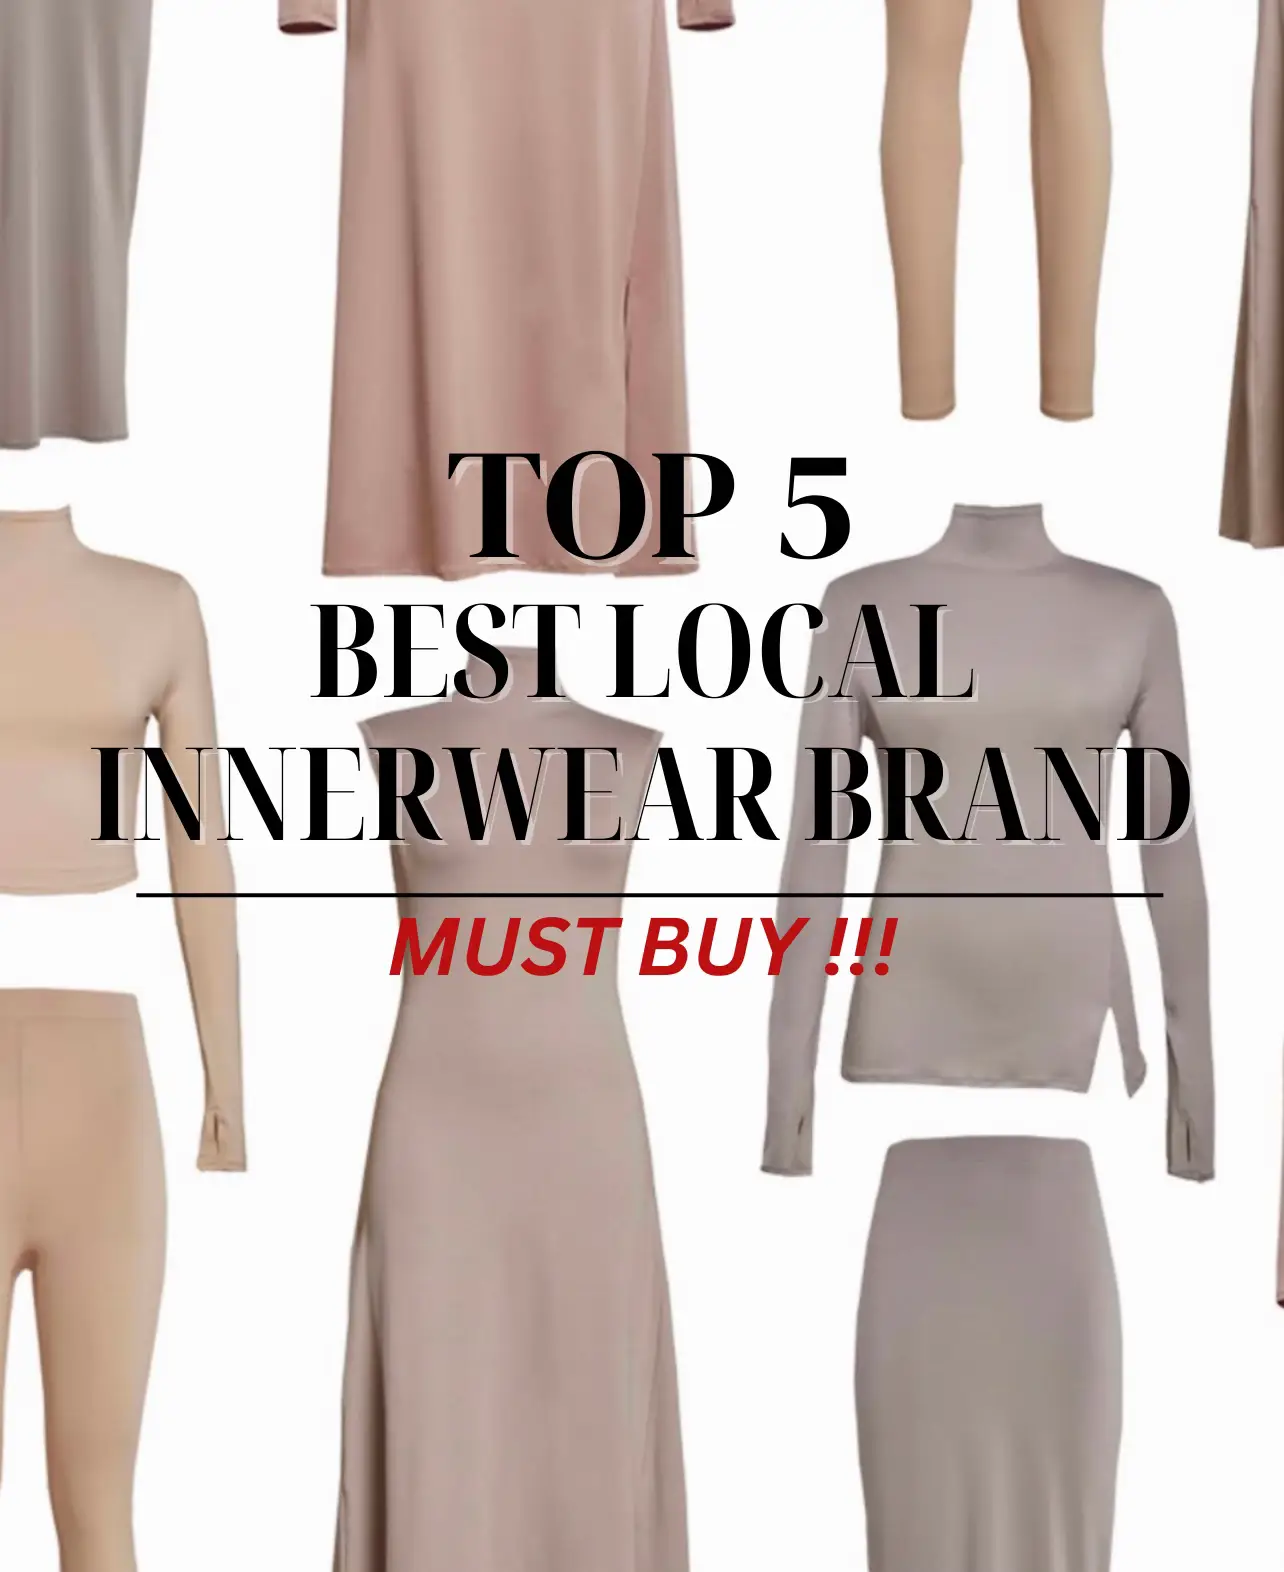 Top 5 Best Local Innerwear Brand, Modest Essential